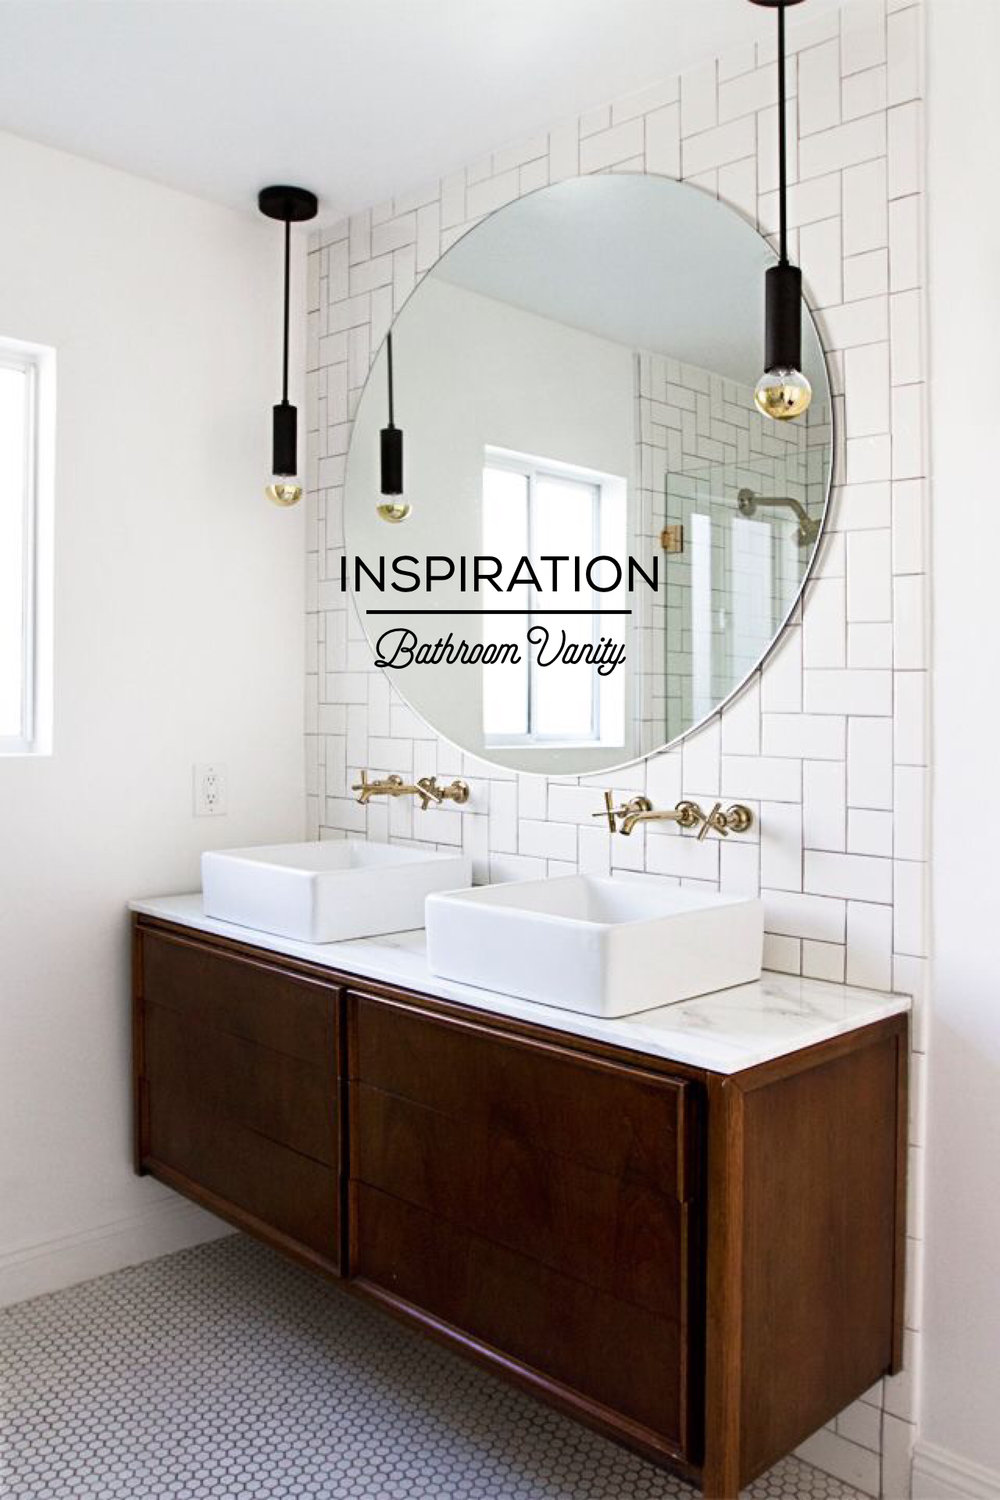 Inspiration Bathroom Vanity My, Simple Bathroom Vanity